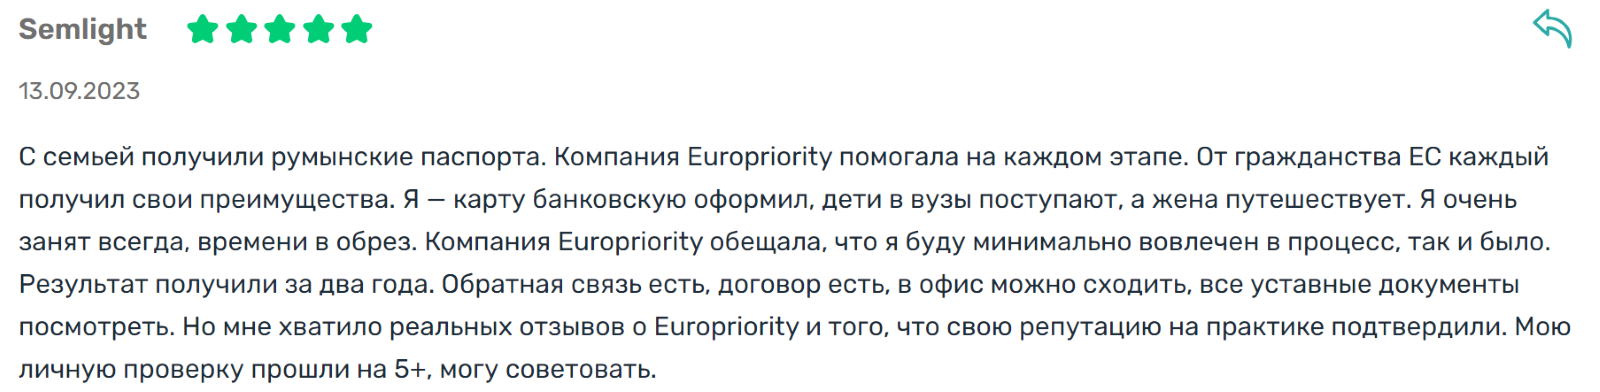 Отзыв о Europriority 